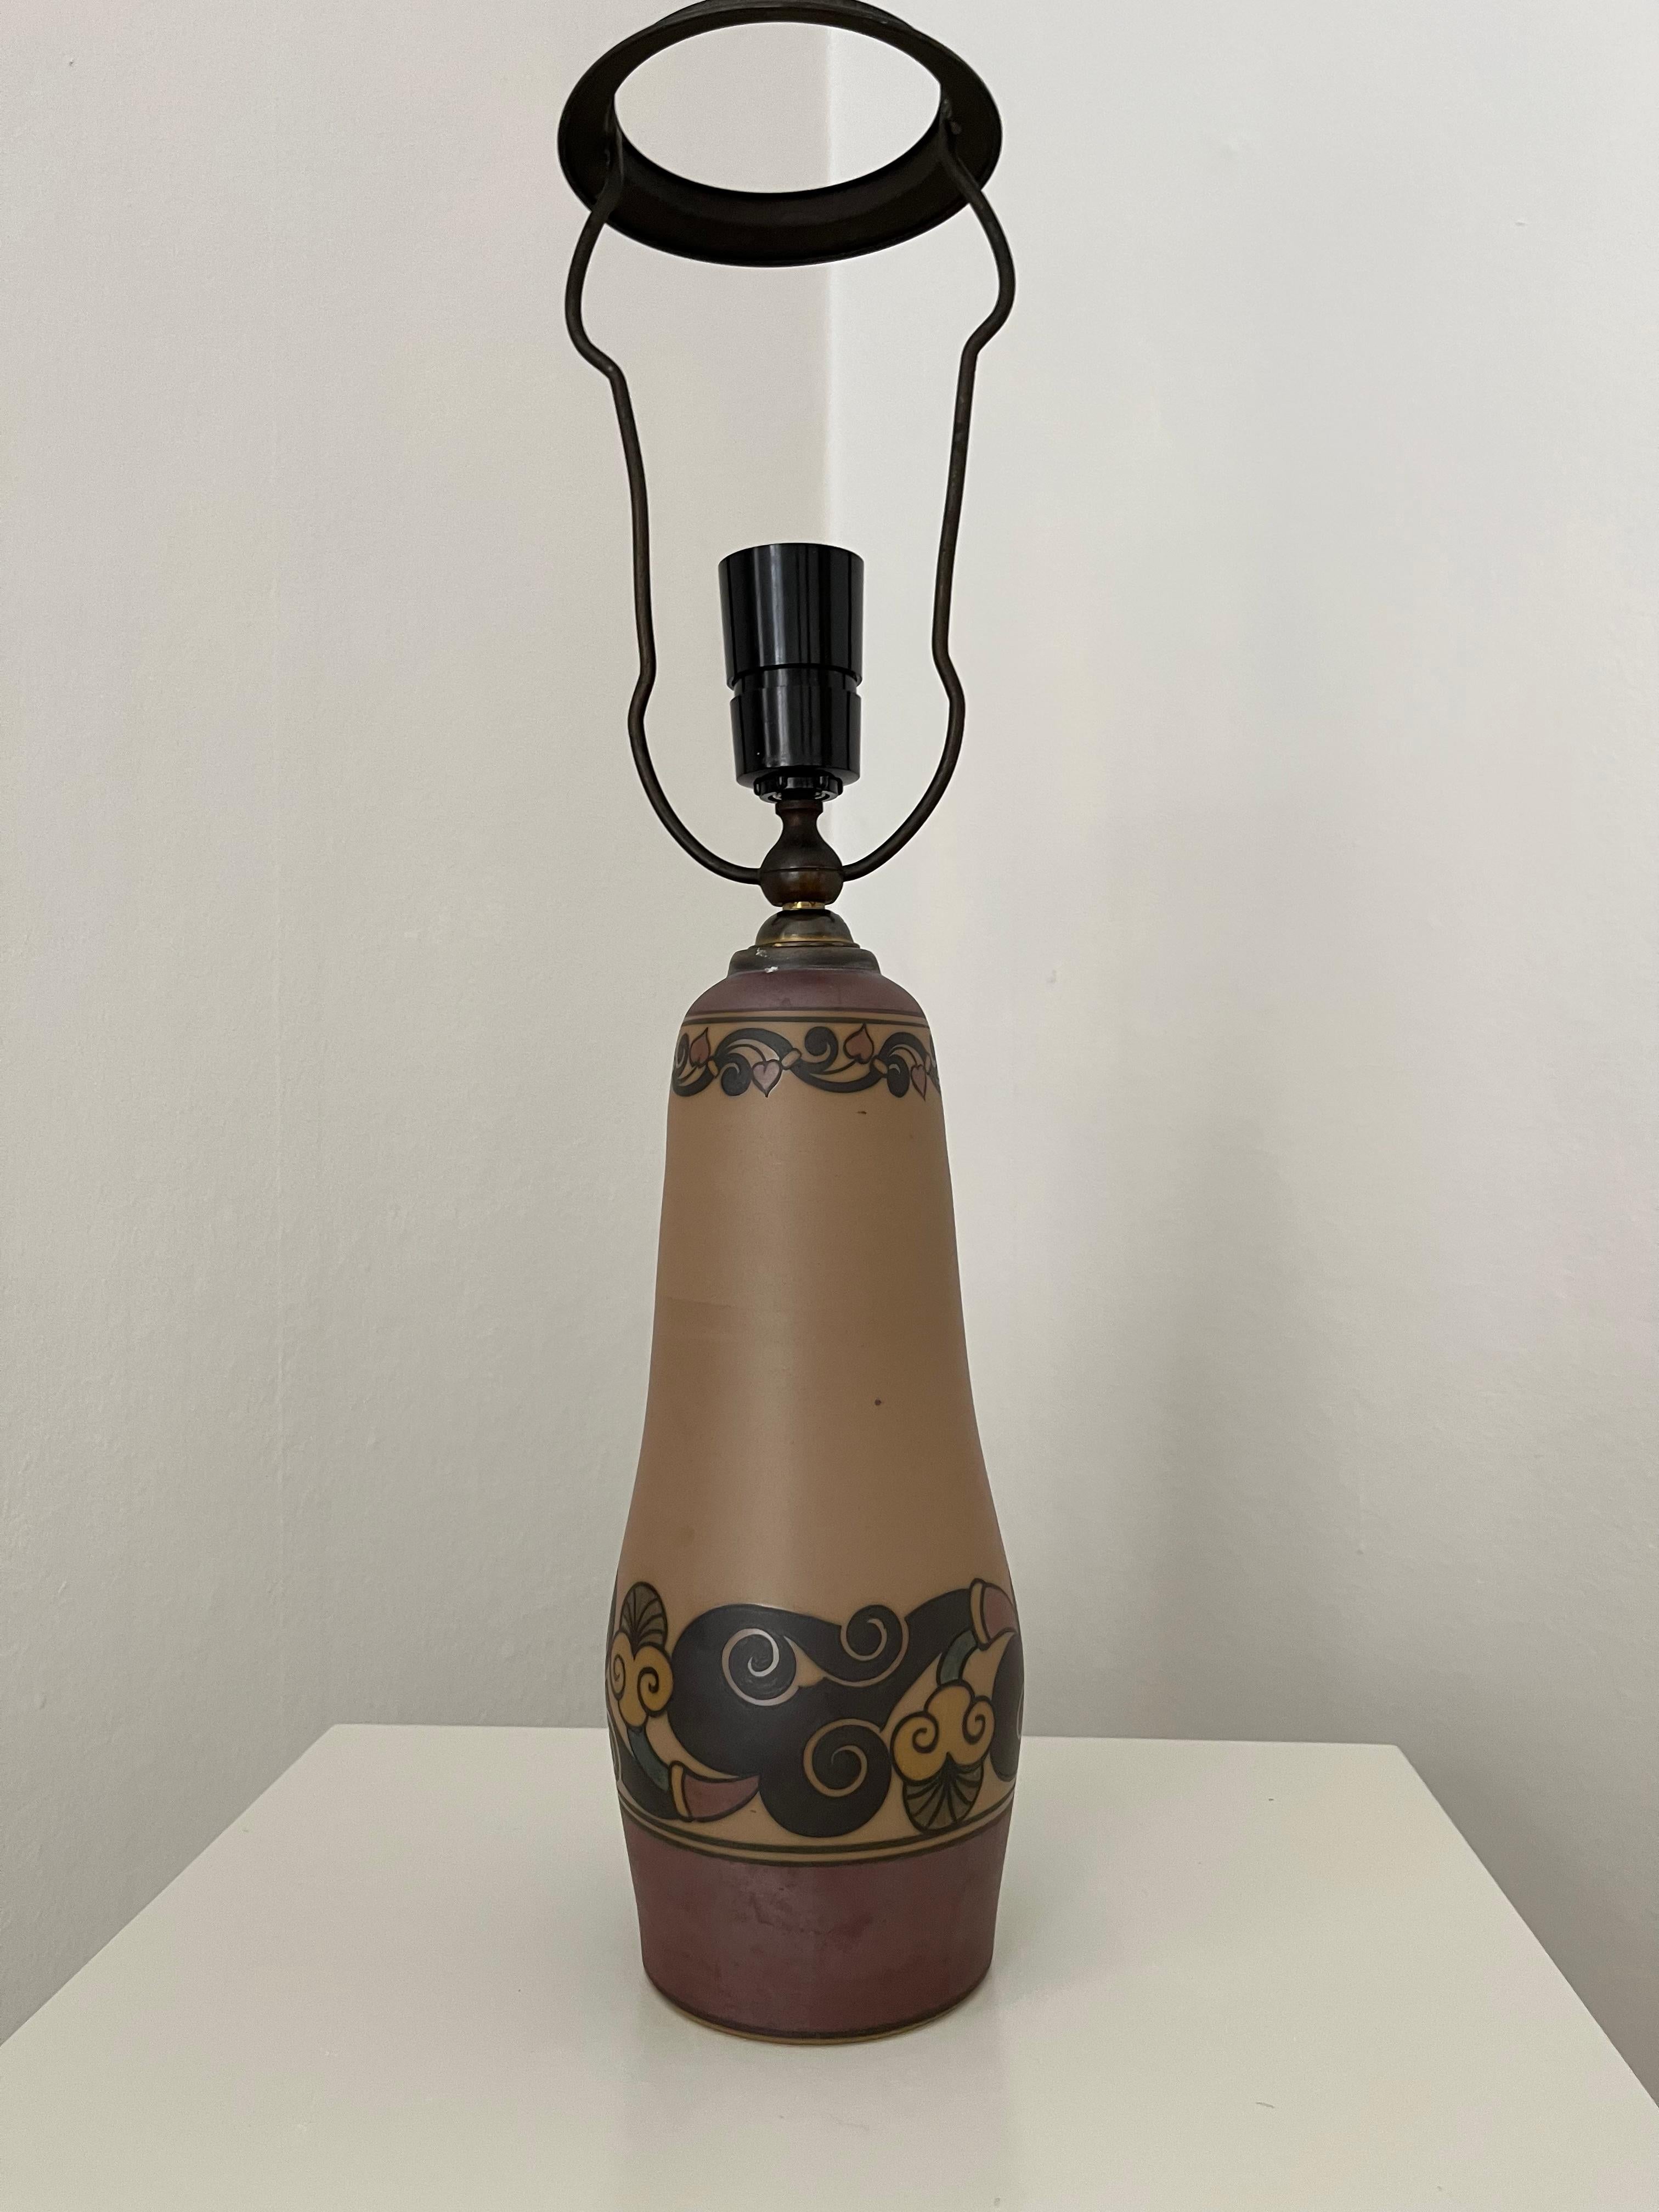 Lampe de table Art nouveau en céramique danoise, décorée à la main, fabriquée par l'usine de céramique I.L.A. Cette grande lampe de table date des années 1930 et est en très bon état. Vendu sans l'abat-jour.

L'usine de céramique de Hjorths est l'un